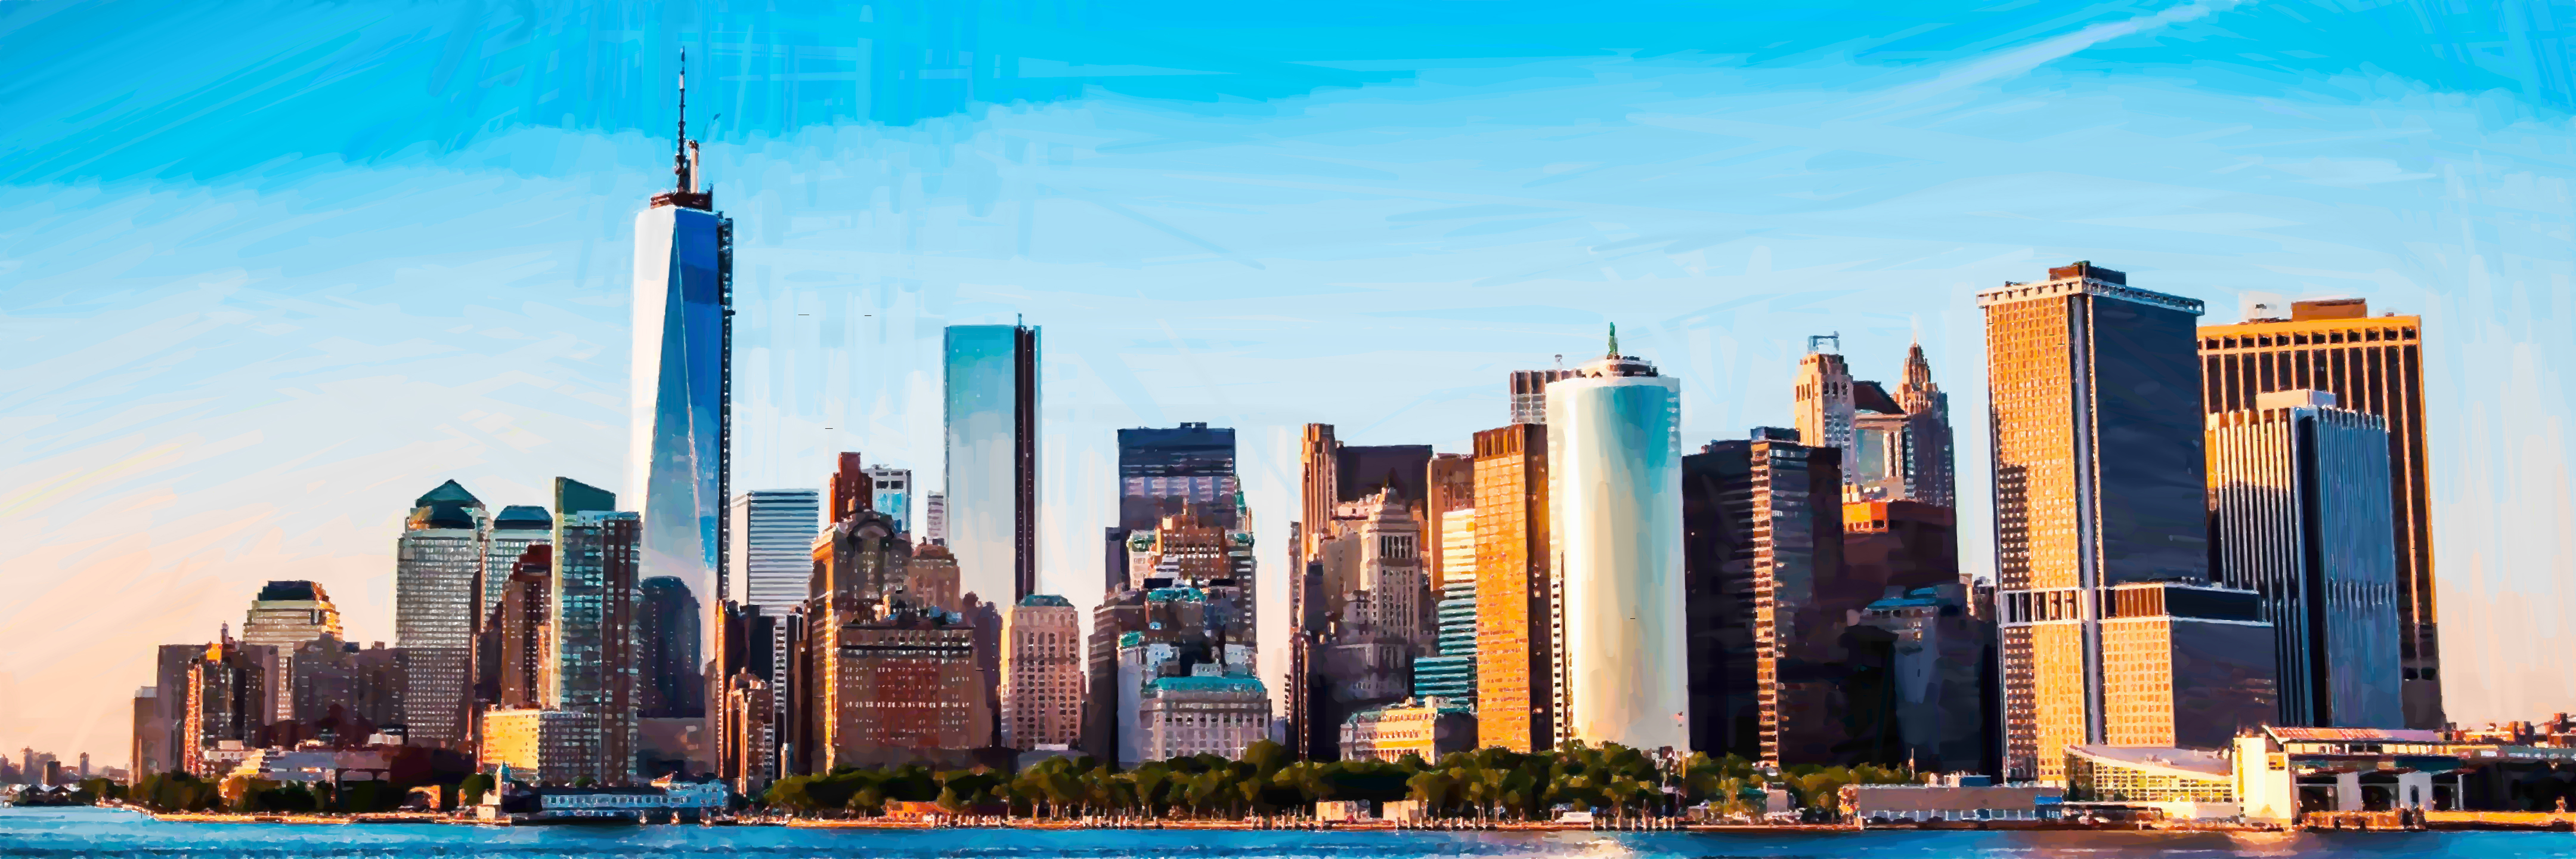 New York Panorama by maXX2707